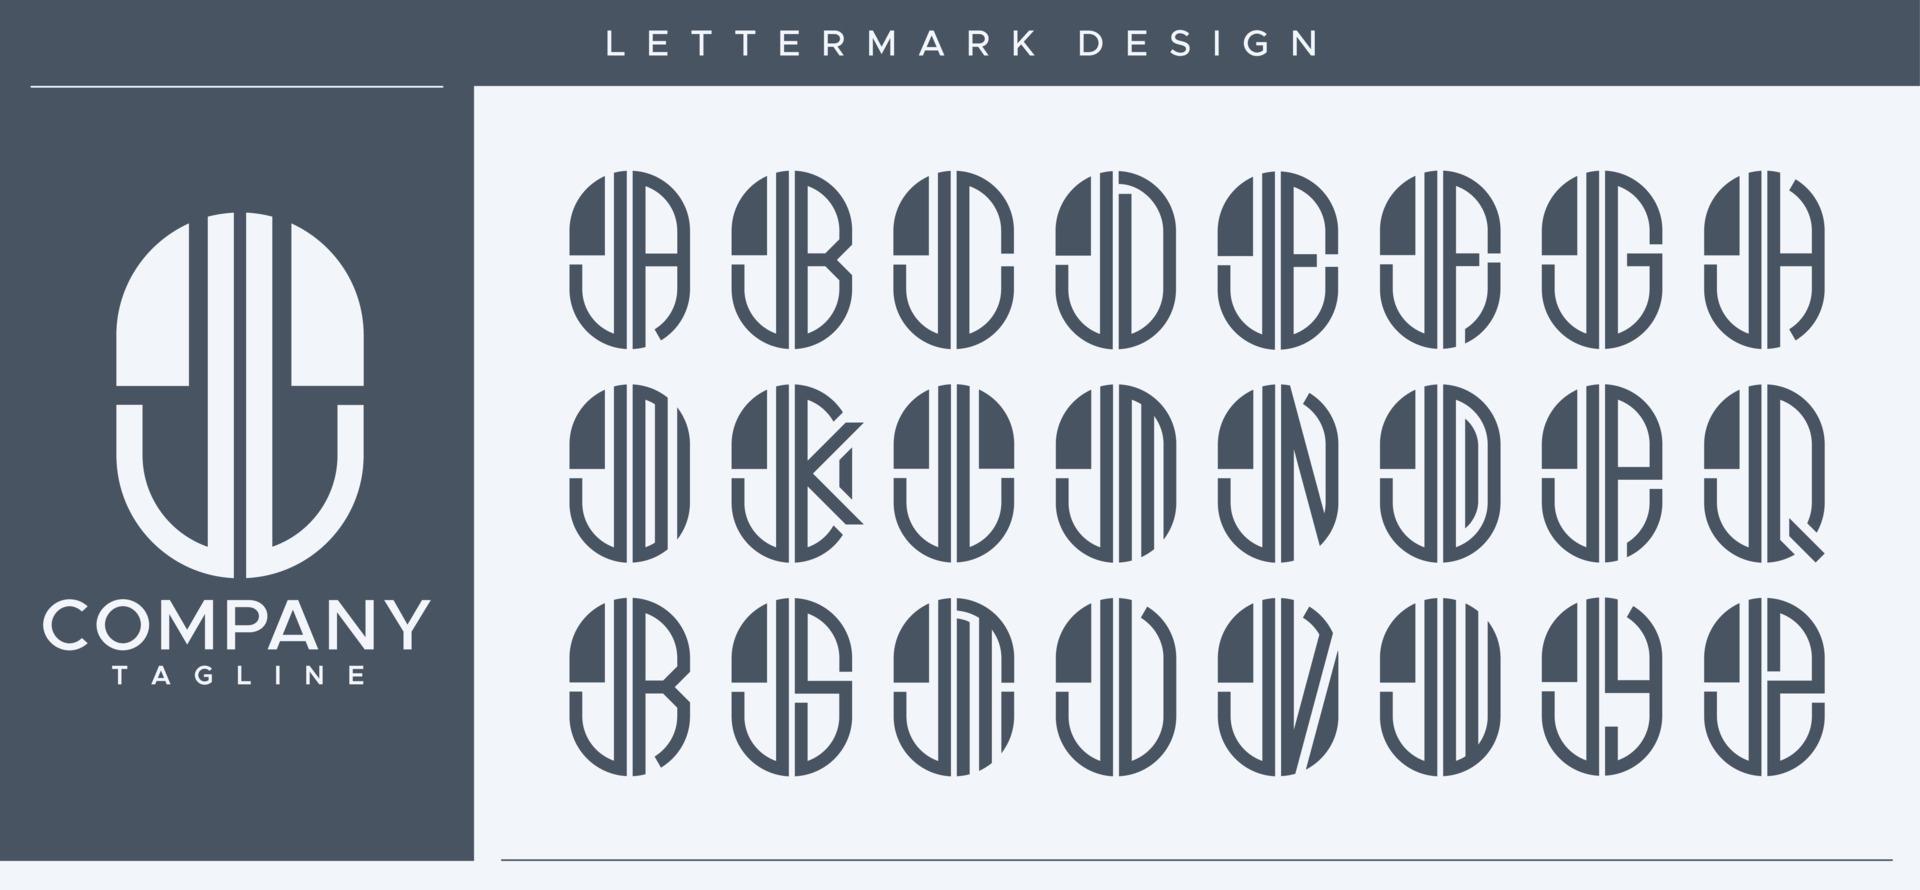 abstrait tube lettre j logo conception. moderne ligne capsule jj j lettre logo vecteur ensemble.